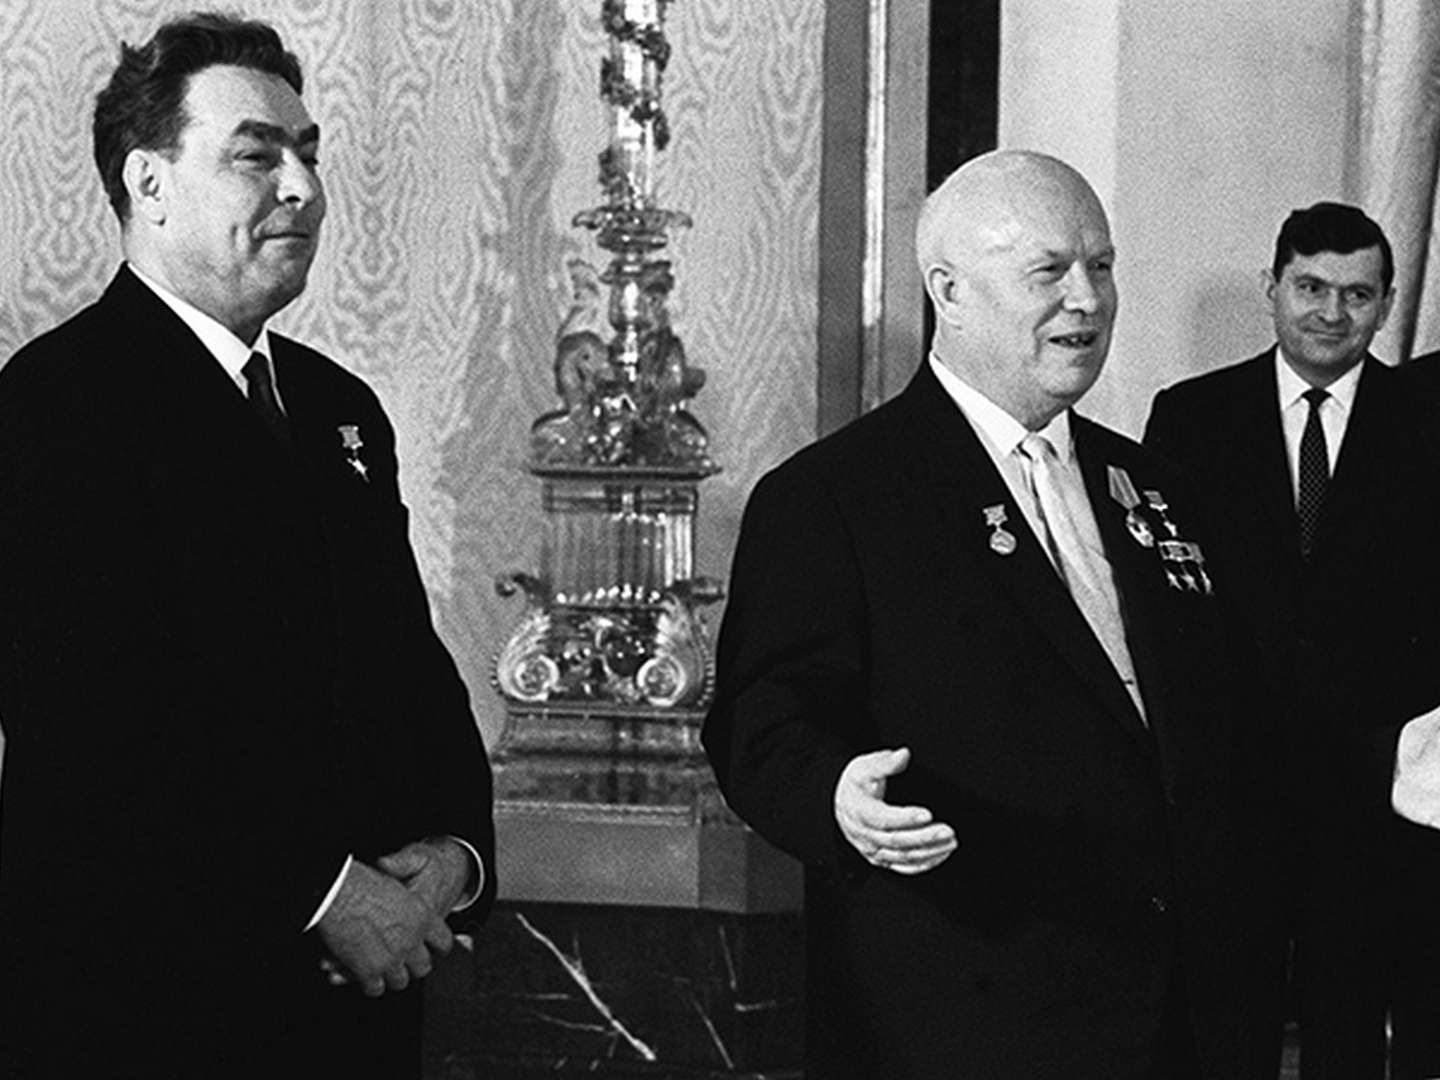 Председатель цк кпсс советского союза. Хрущев и Брежнев 1964.